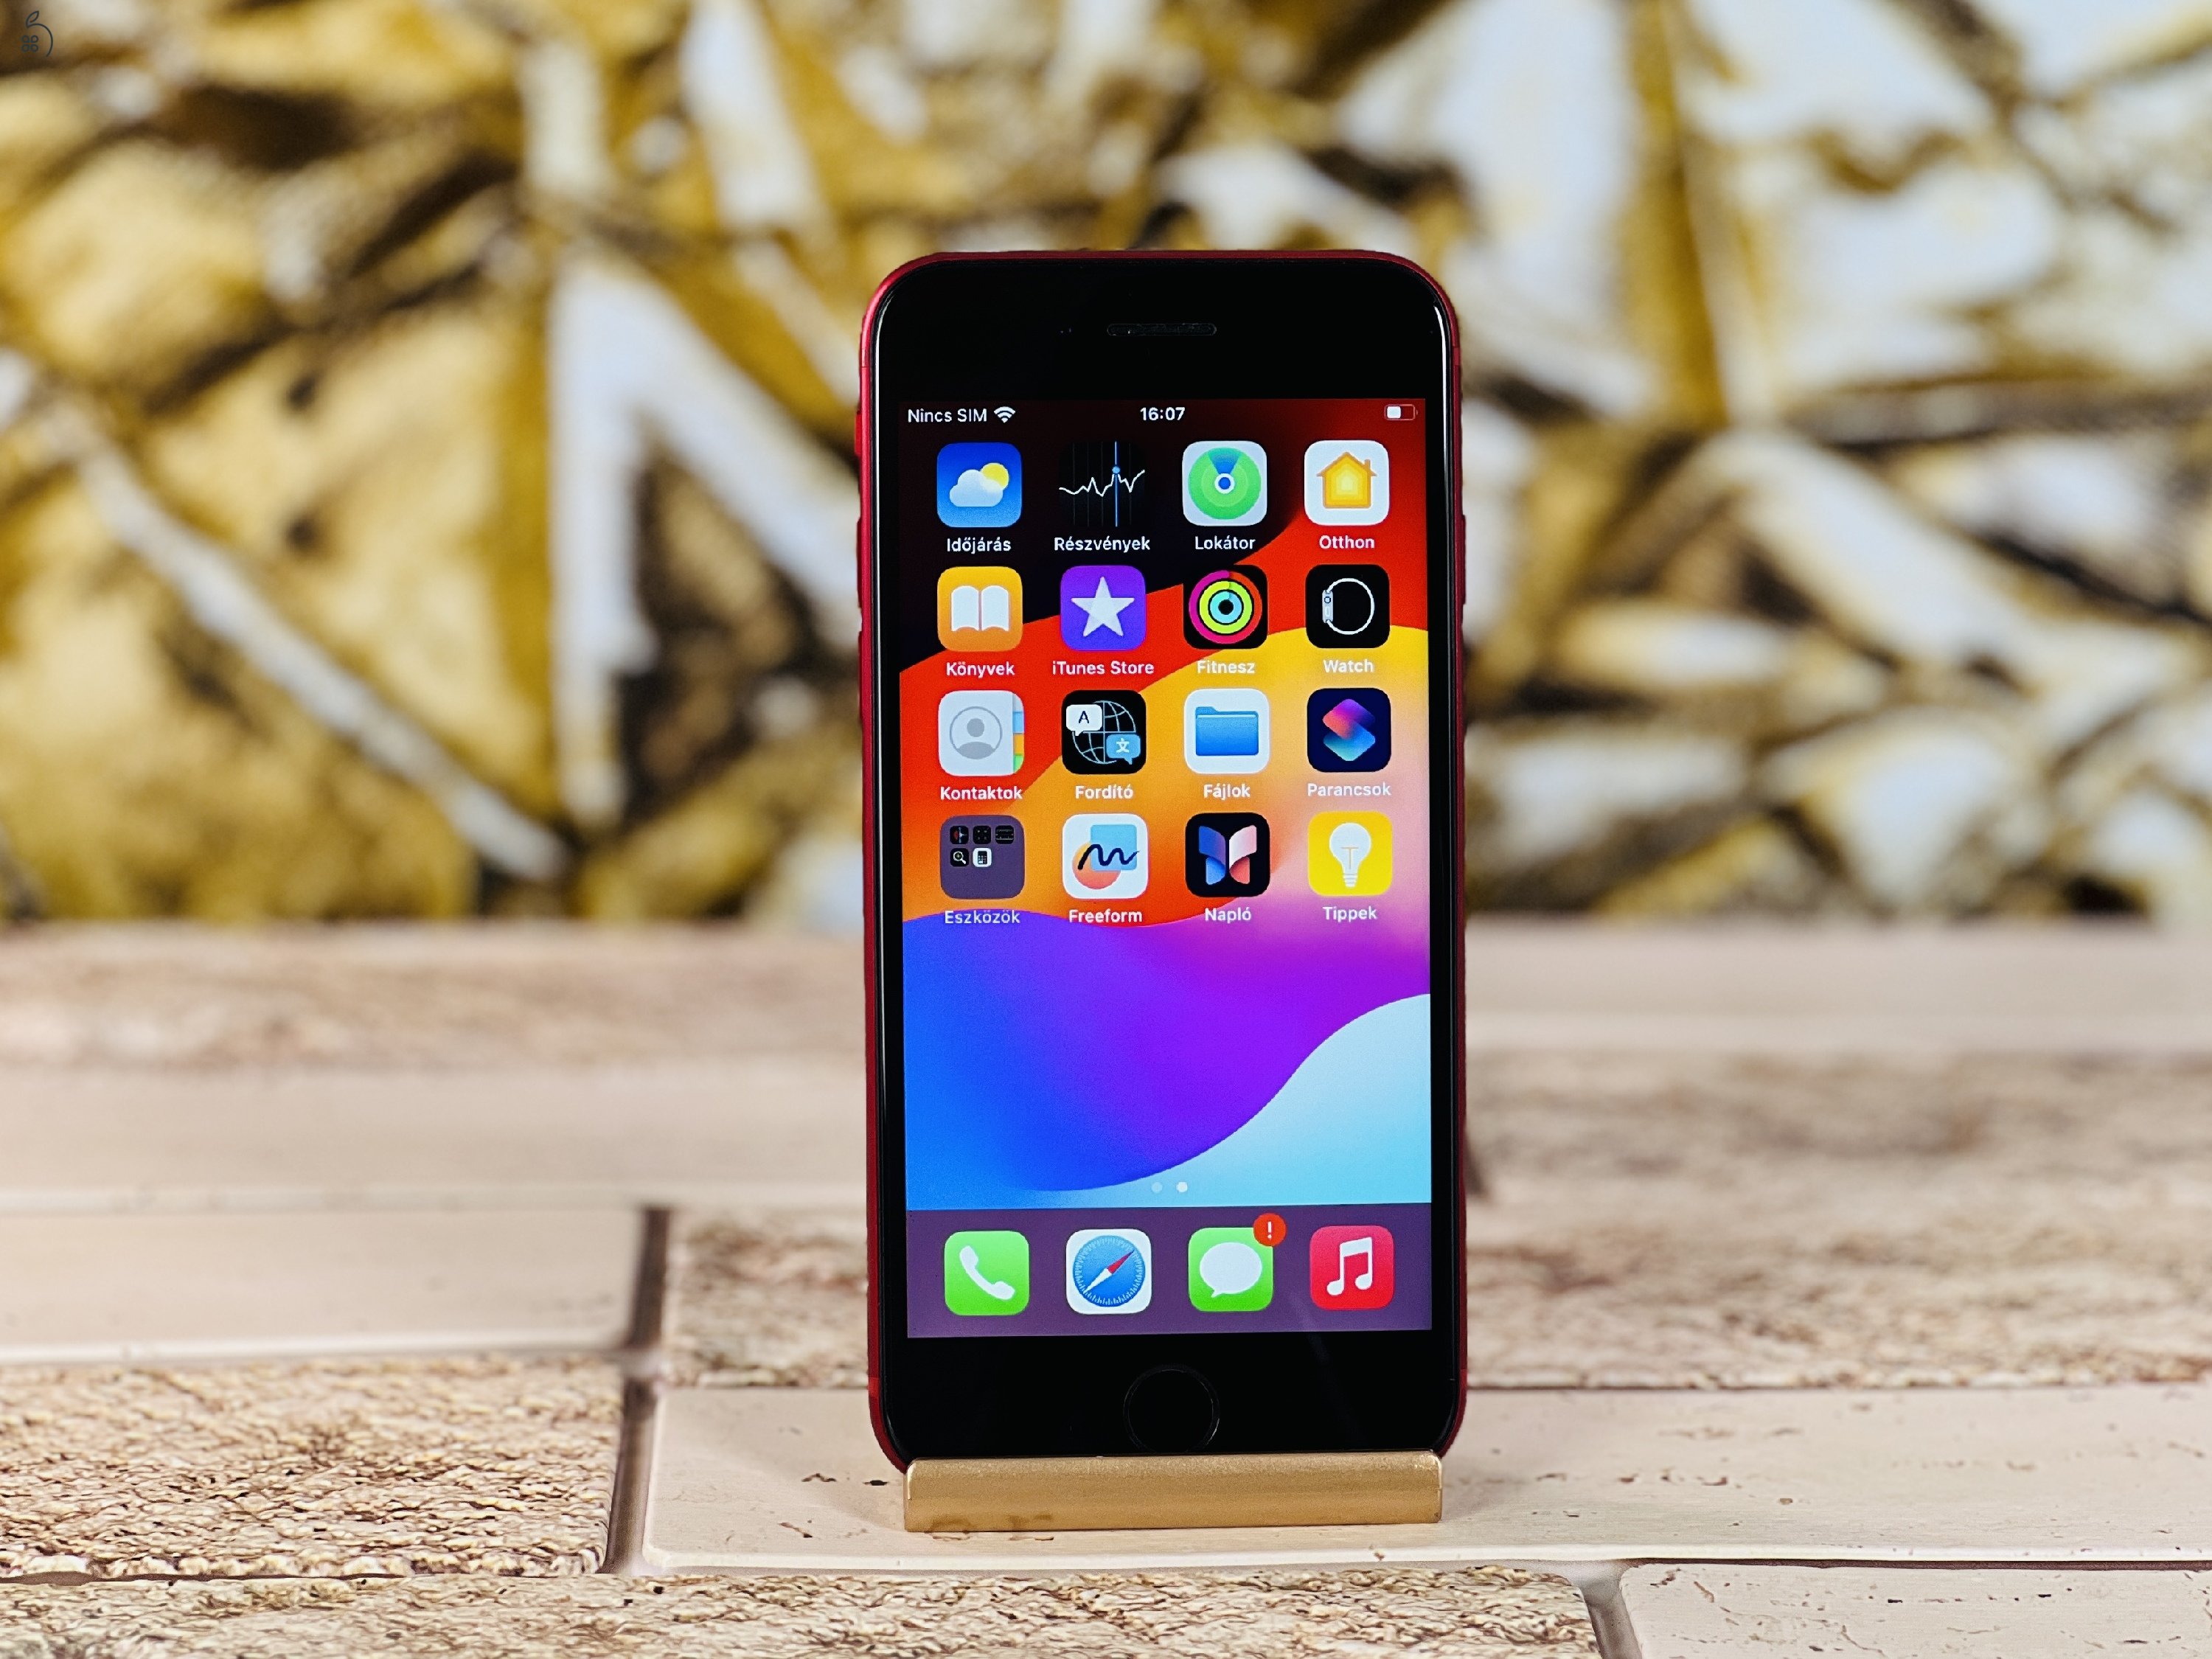 Eladó iPhone SE (2020) 64 GB RED szép állapotú - 12 HÓ GARANCIA - R6543